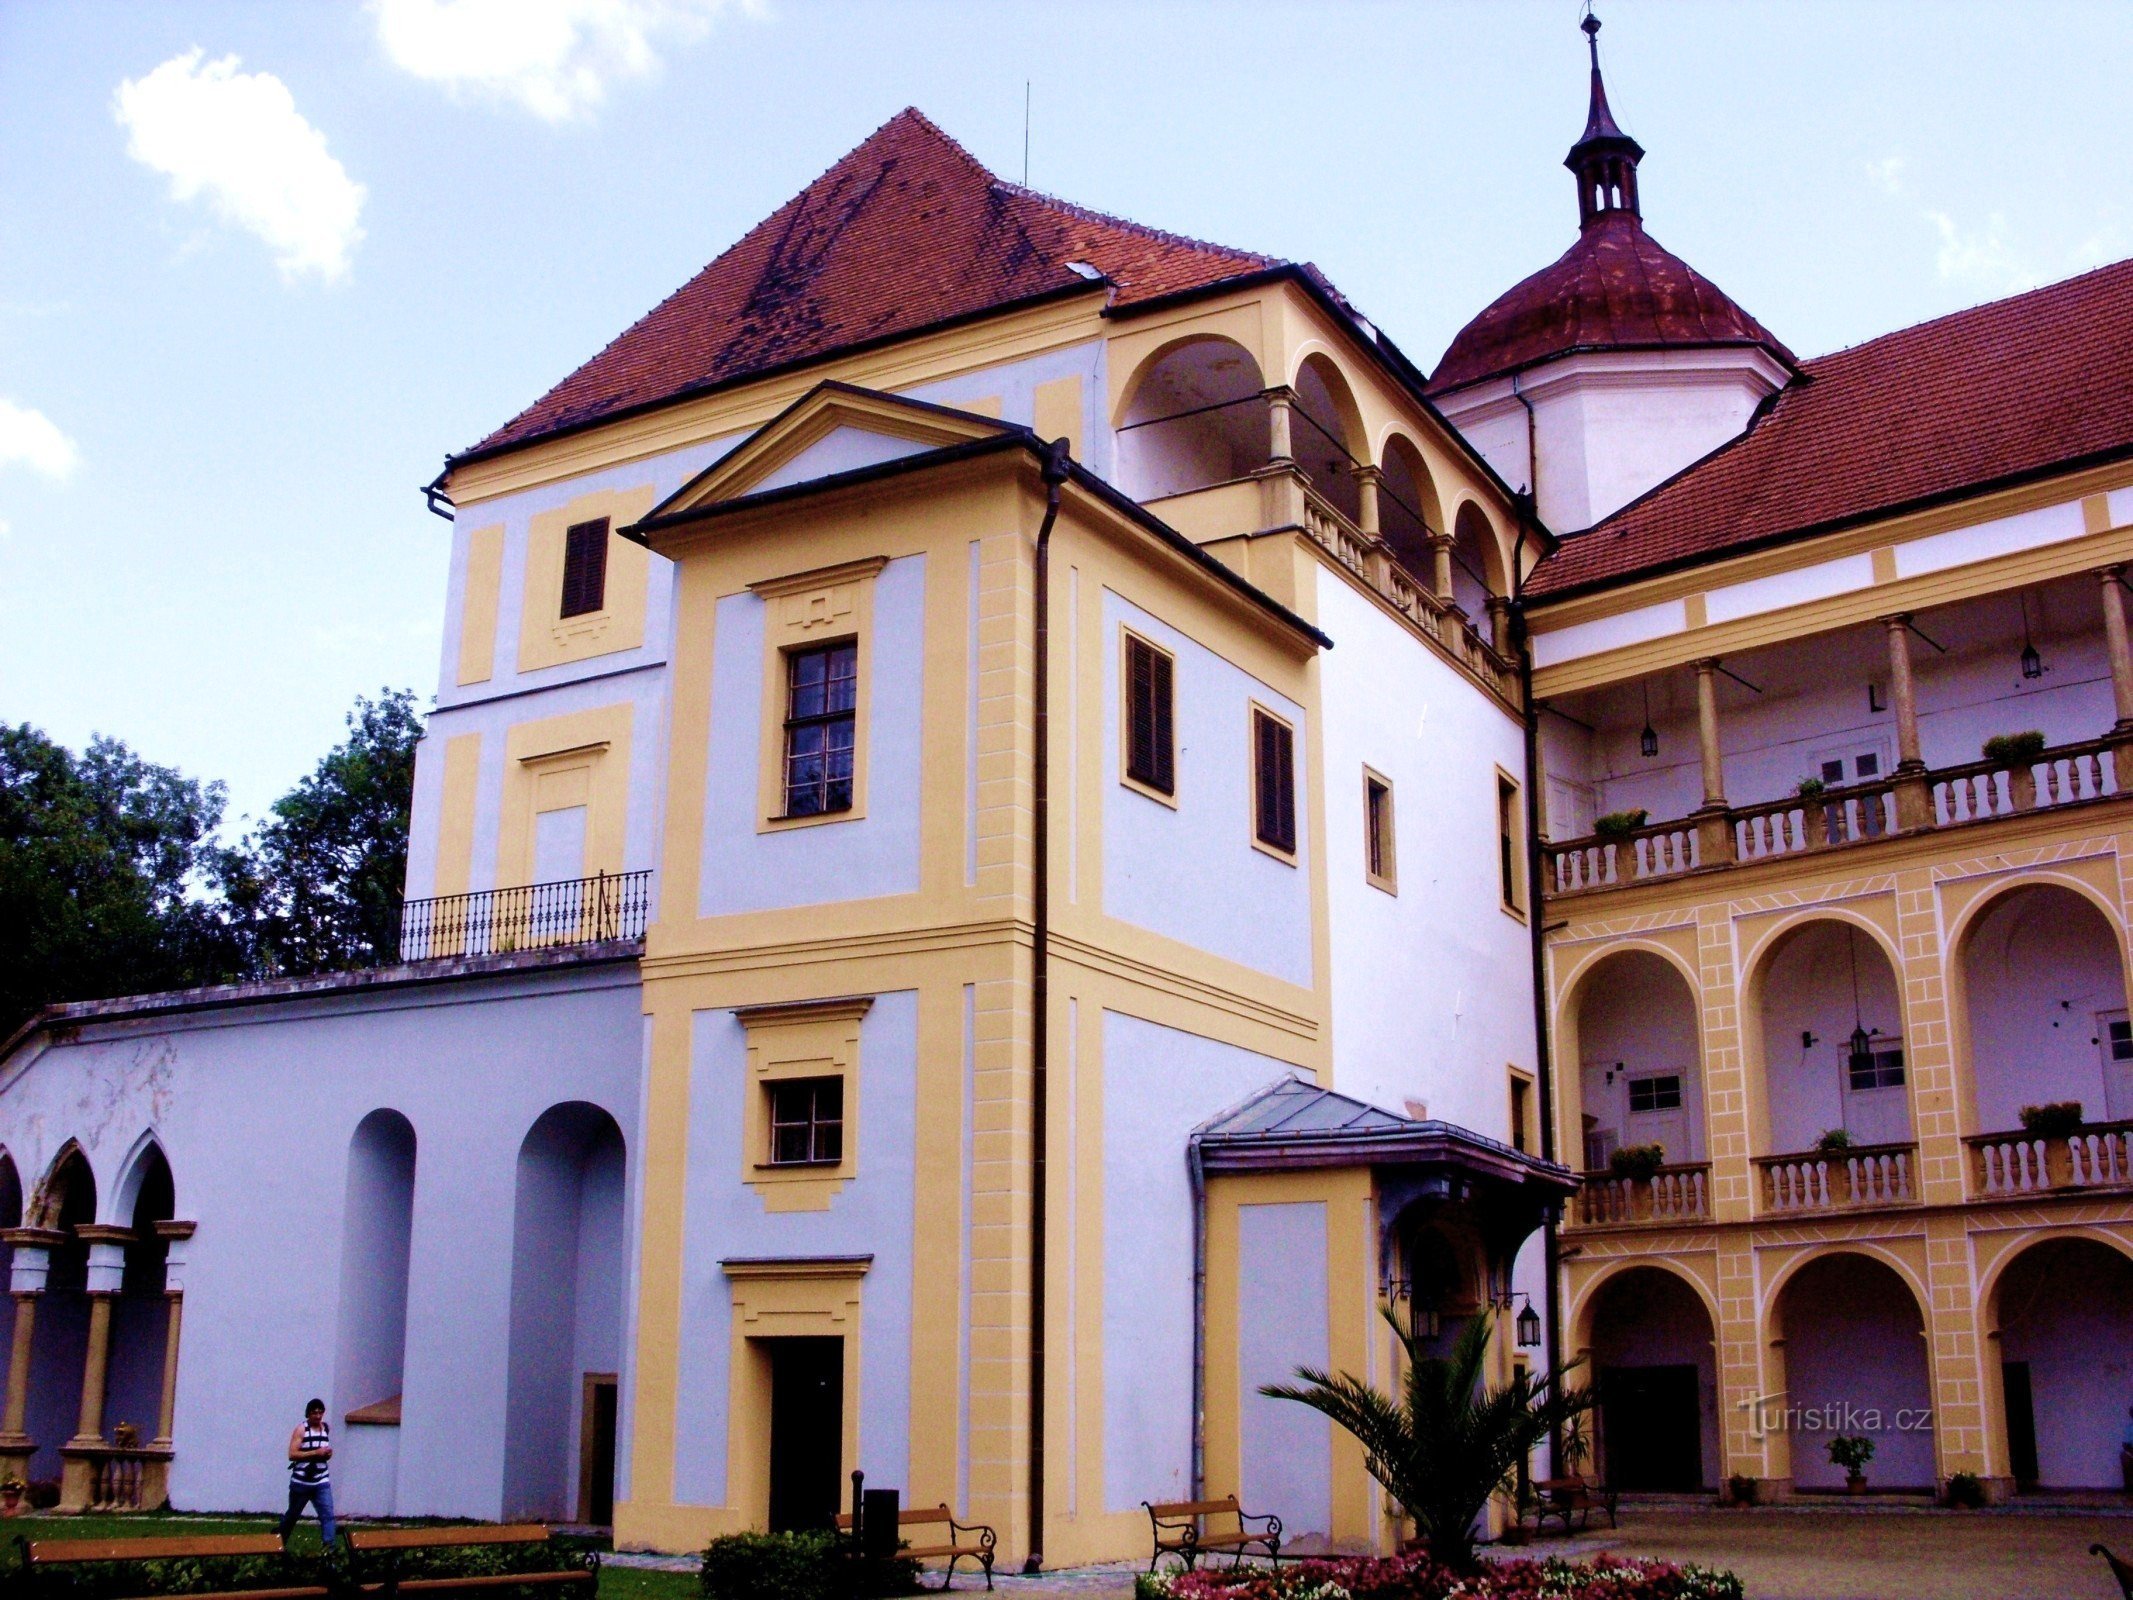 Für ein Erlebnis auf der Burg in Tovačov